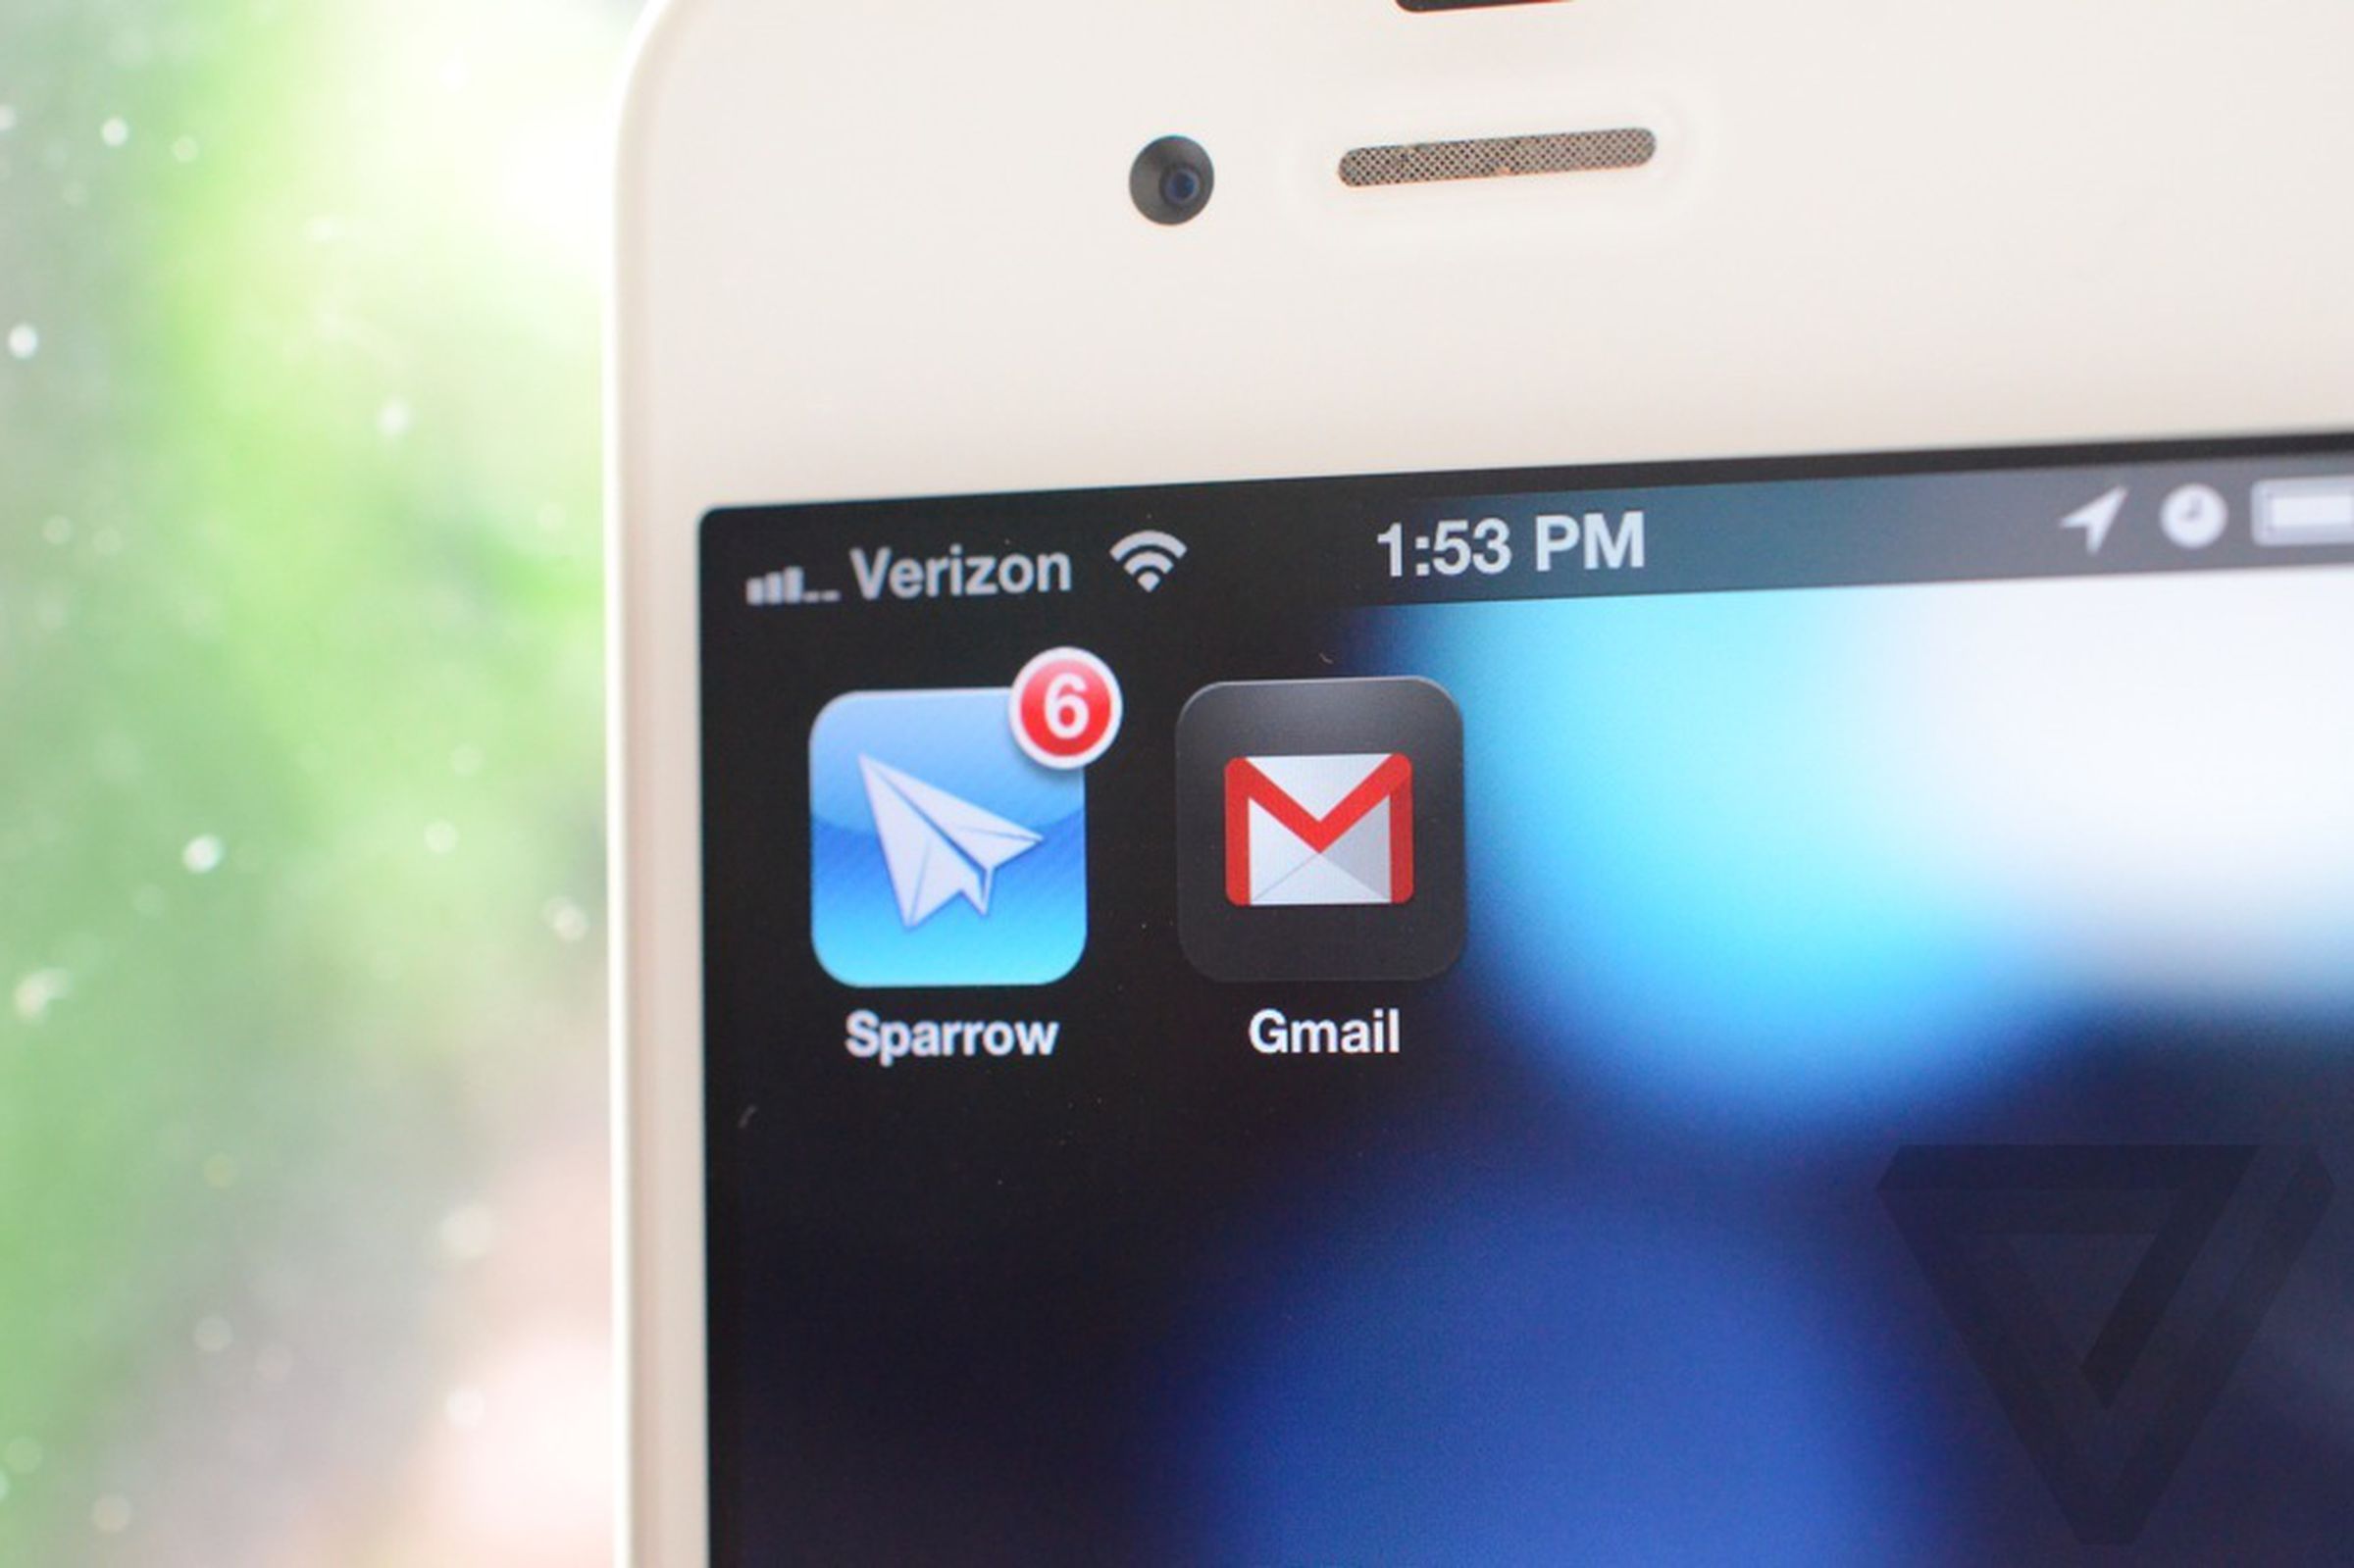 sparrow gmail